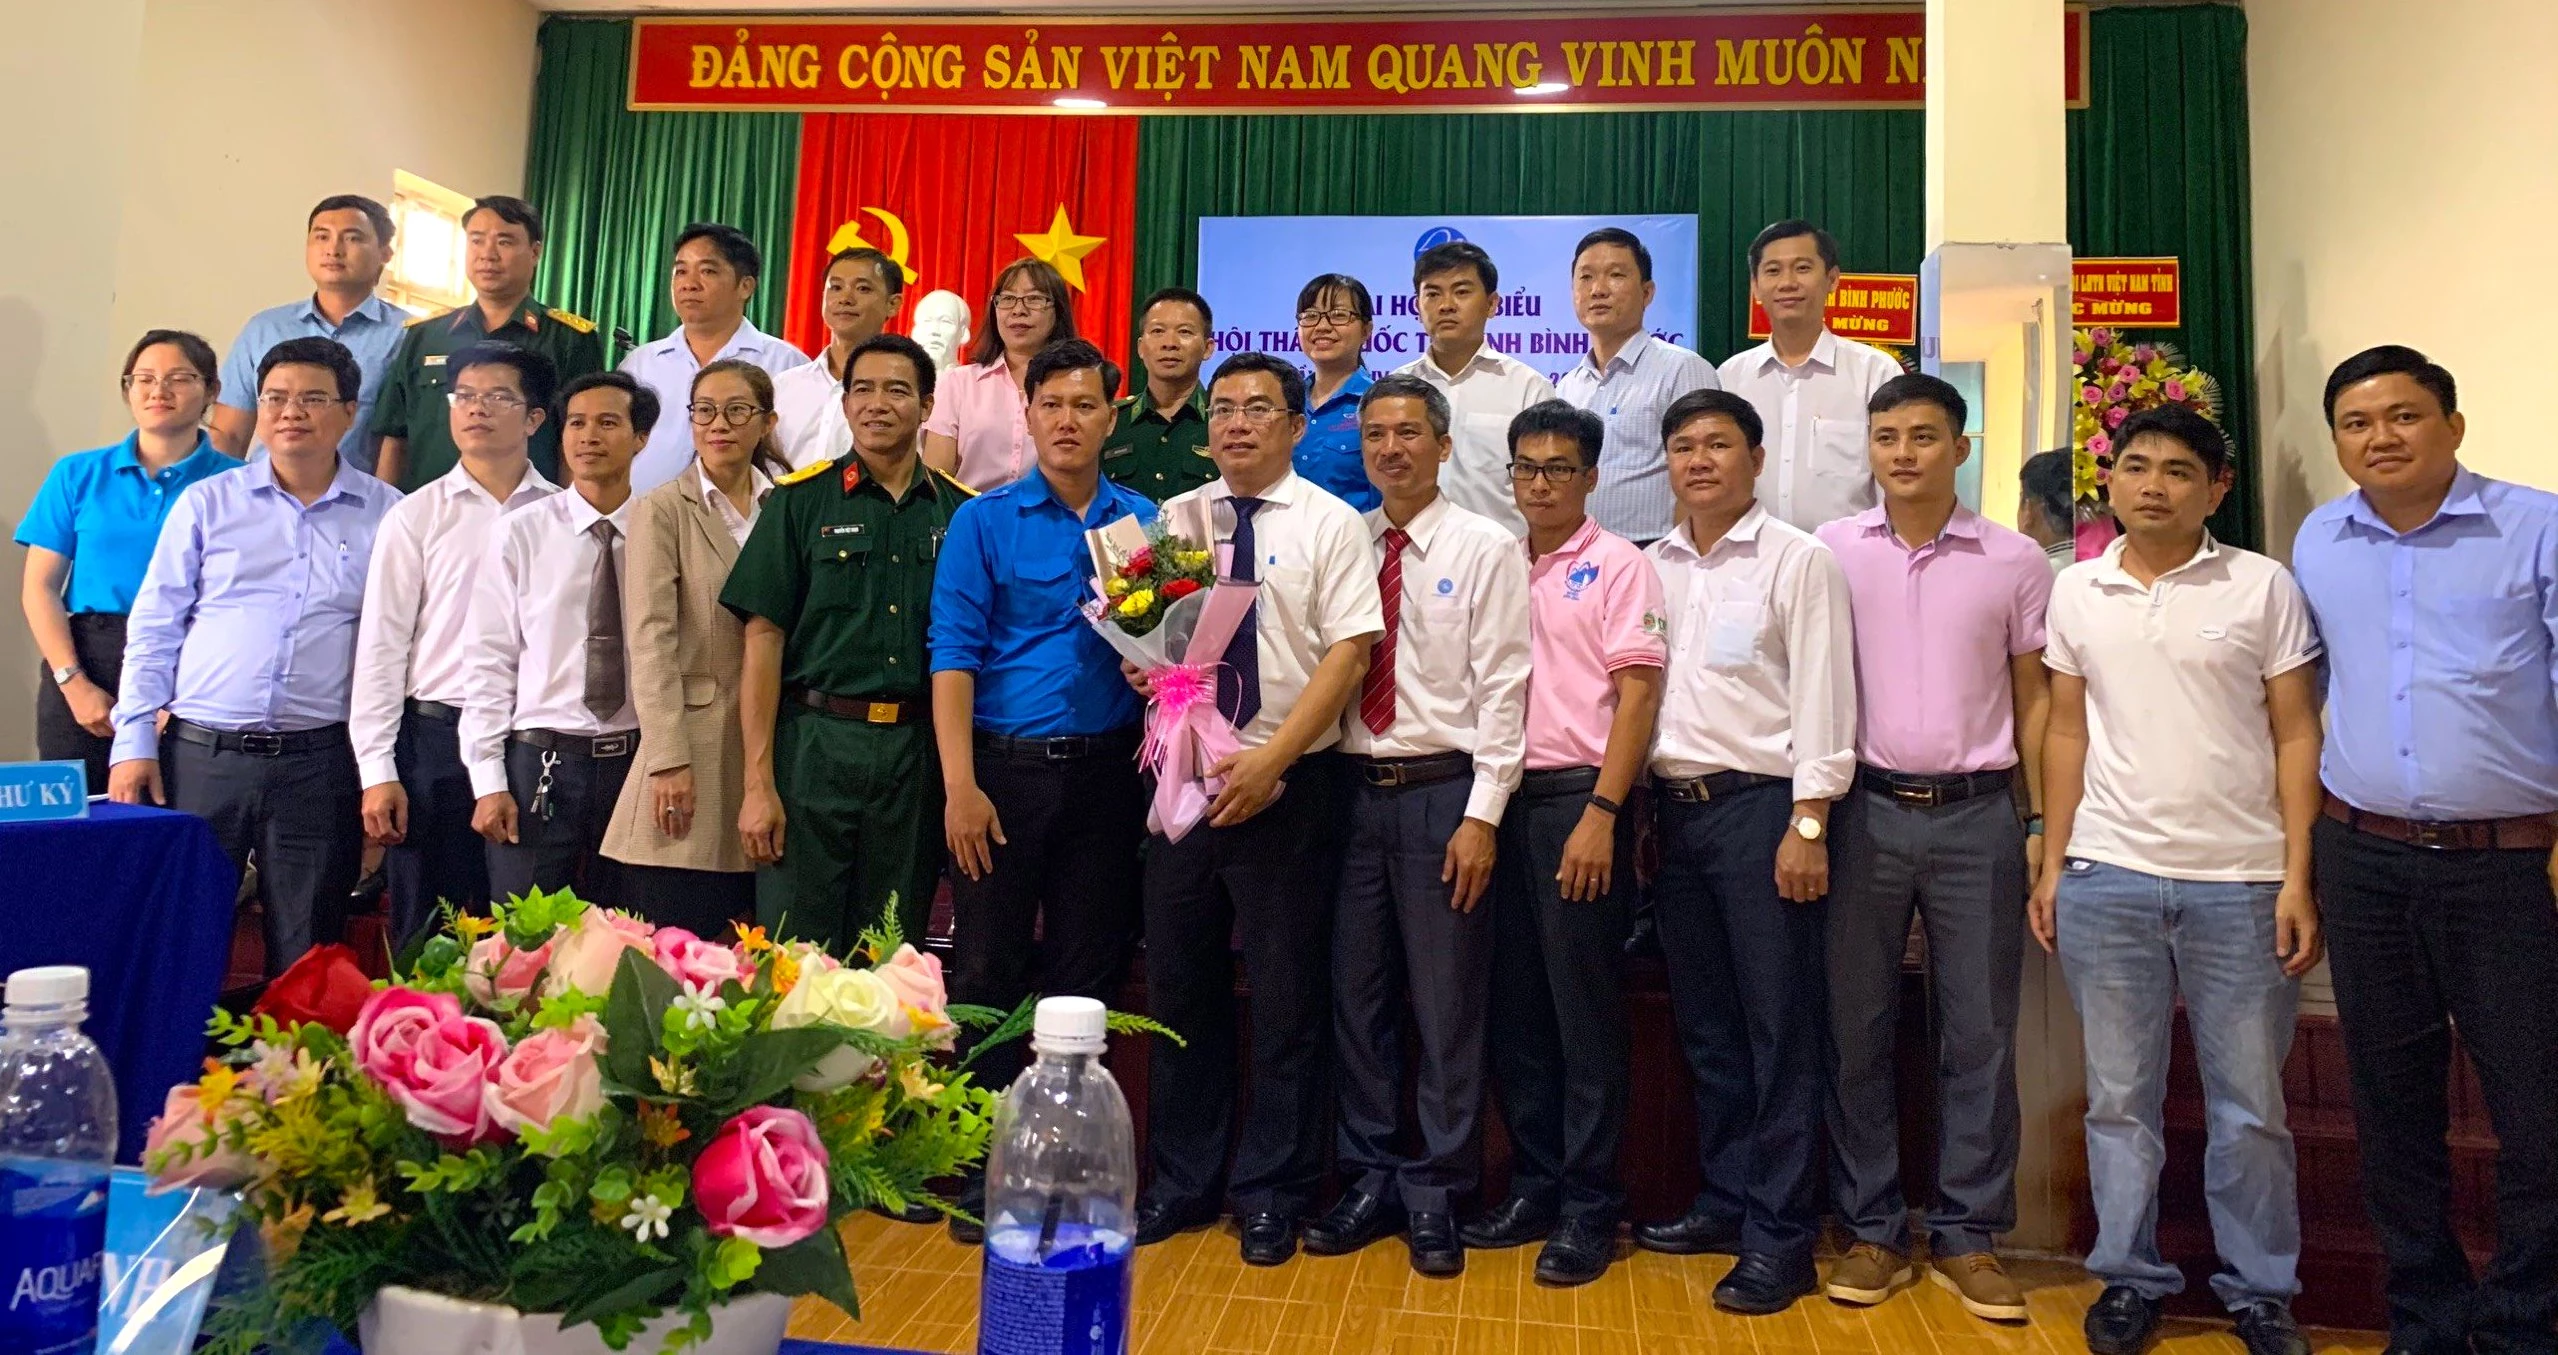 Anh Văn Thanh Bình - Tân Chủ tịch Hội Thầy thuốc trẻ tỉnh Bình Phước khóa IV (cầm hoa) cùng BCH Hội nhiệm kỳ 2020 - 2025 ra mắt tại Đại hội